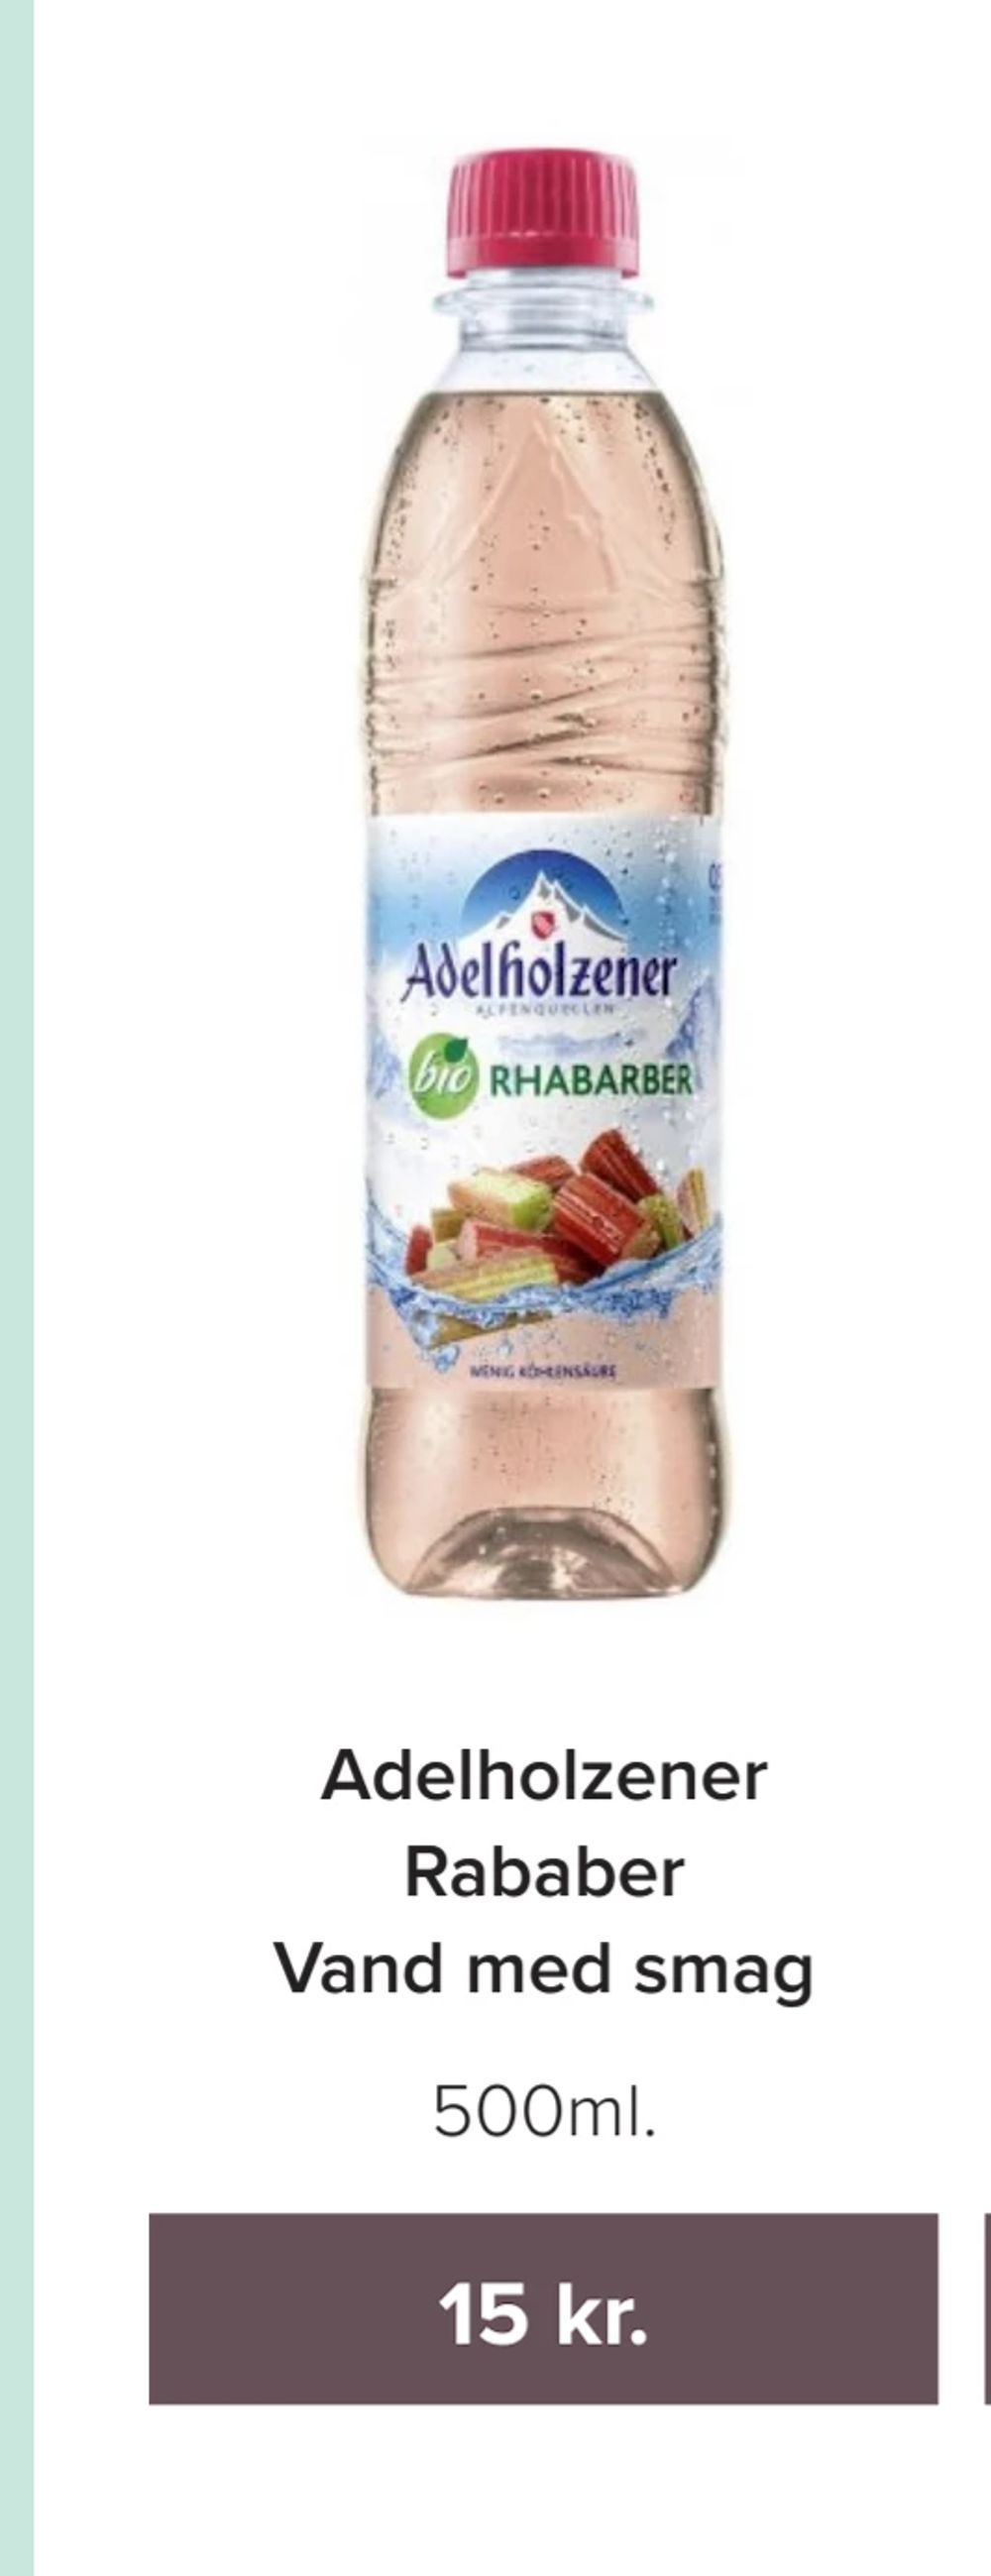 Tilbud på Adelholzener Rababer Vand med smag fra Helsemin til 15 kr.